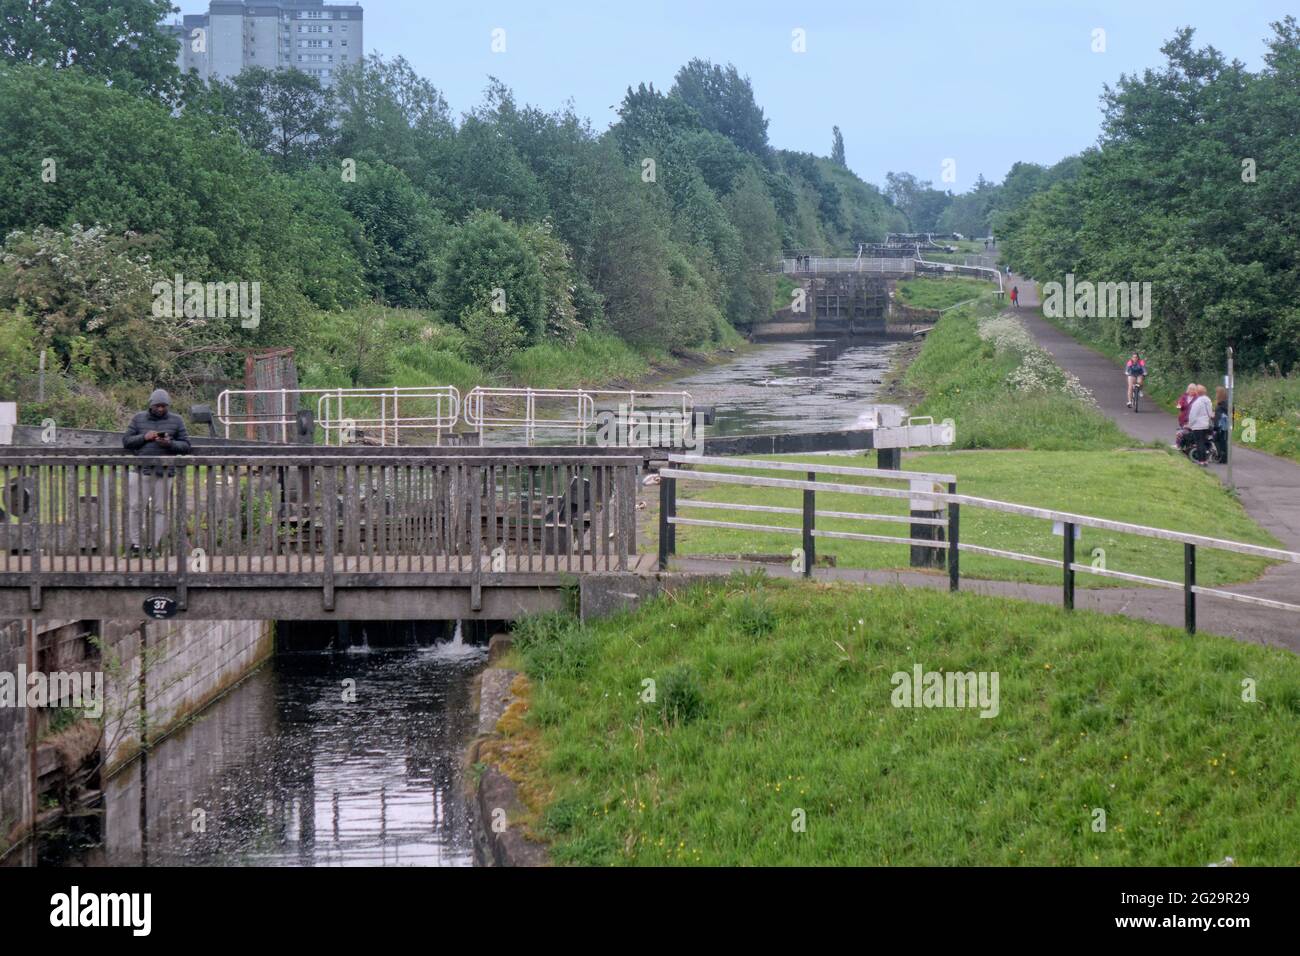 Glasgow, Scozia, Regno Unito, 9 giugno 2021. I canali Svotish hanno twittato "a causa di un problema di terze parti con il gasdotto Monkland che alimenta la rete idrica di ForthandClydeCanal, l'approvvigionamento idrico sul canale è attualmente basso. Tutta la navigazione lungo il corso d'acqua è attualmente sospesa". AZ confusa fauna selvatica e cracking canali bacini fornire una vista insolita per gli spettatori sul towpath.Copyright Gerard Ferry/Alamy Live News Foto Stock